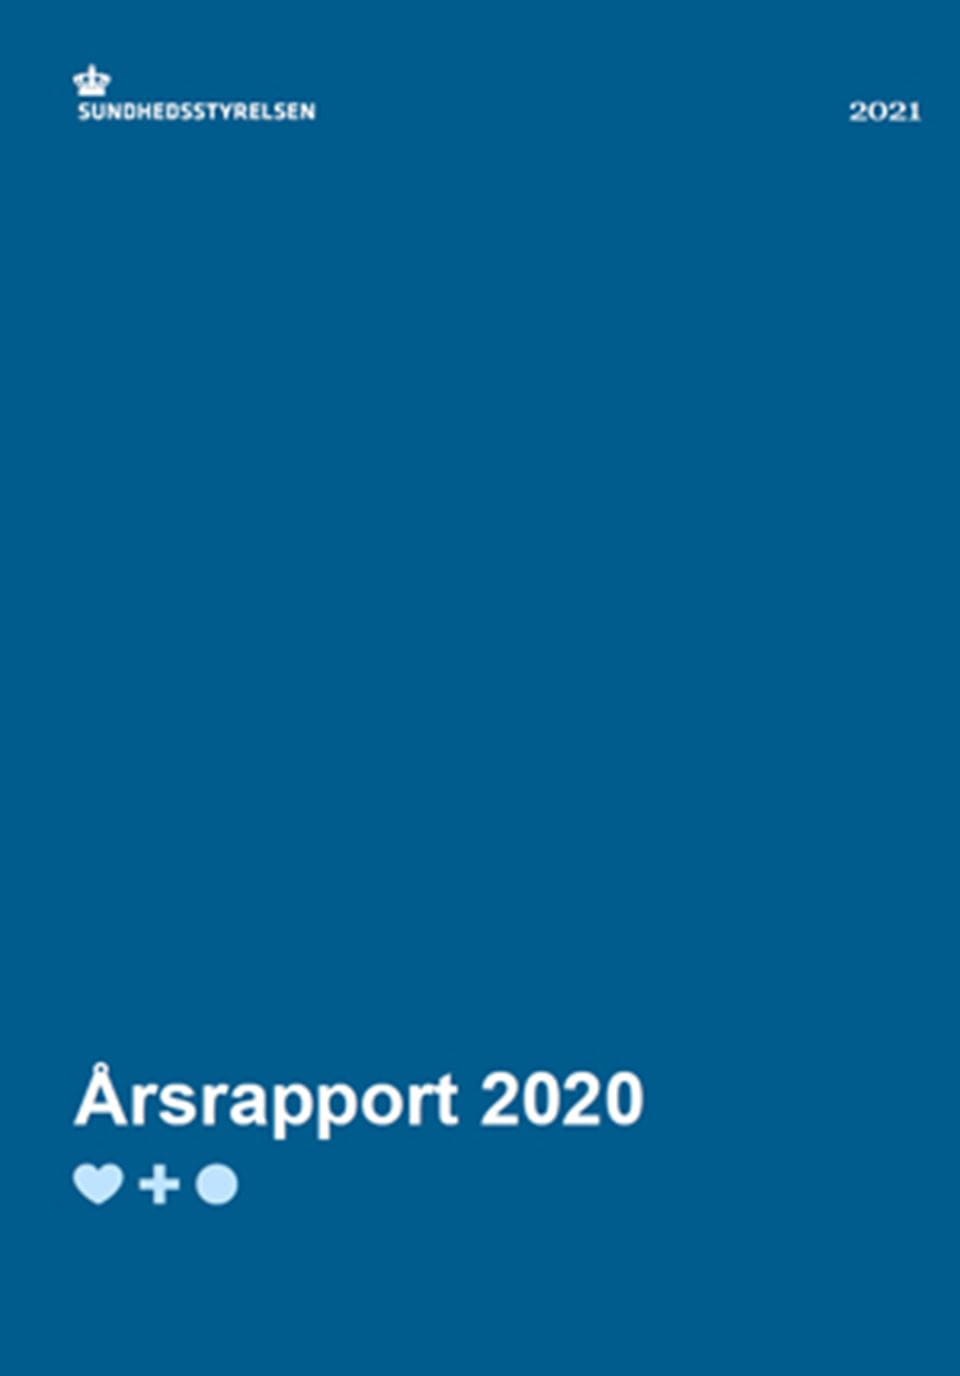 Årsrapport 2020 - Sundhedsstyrelsen